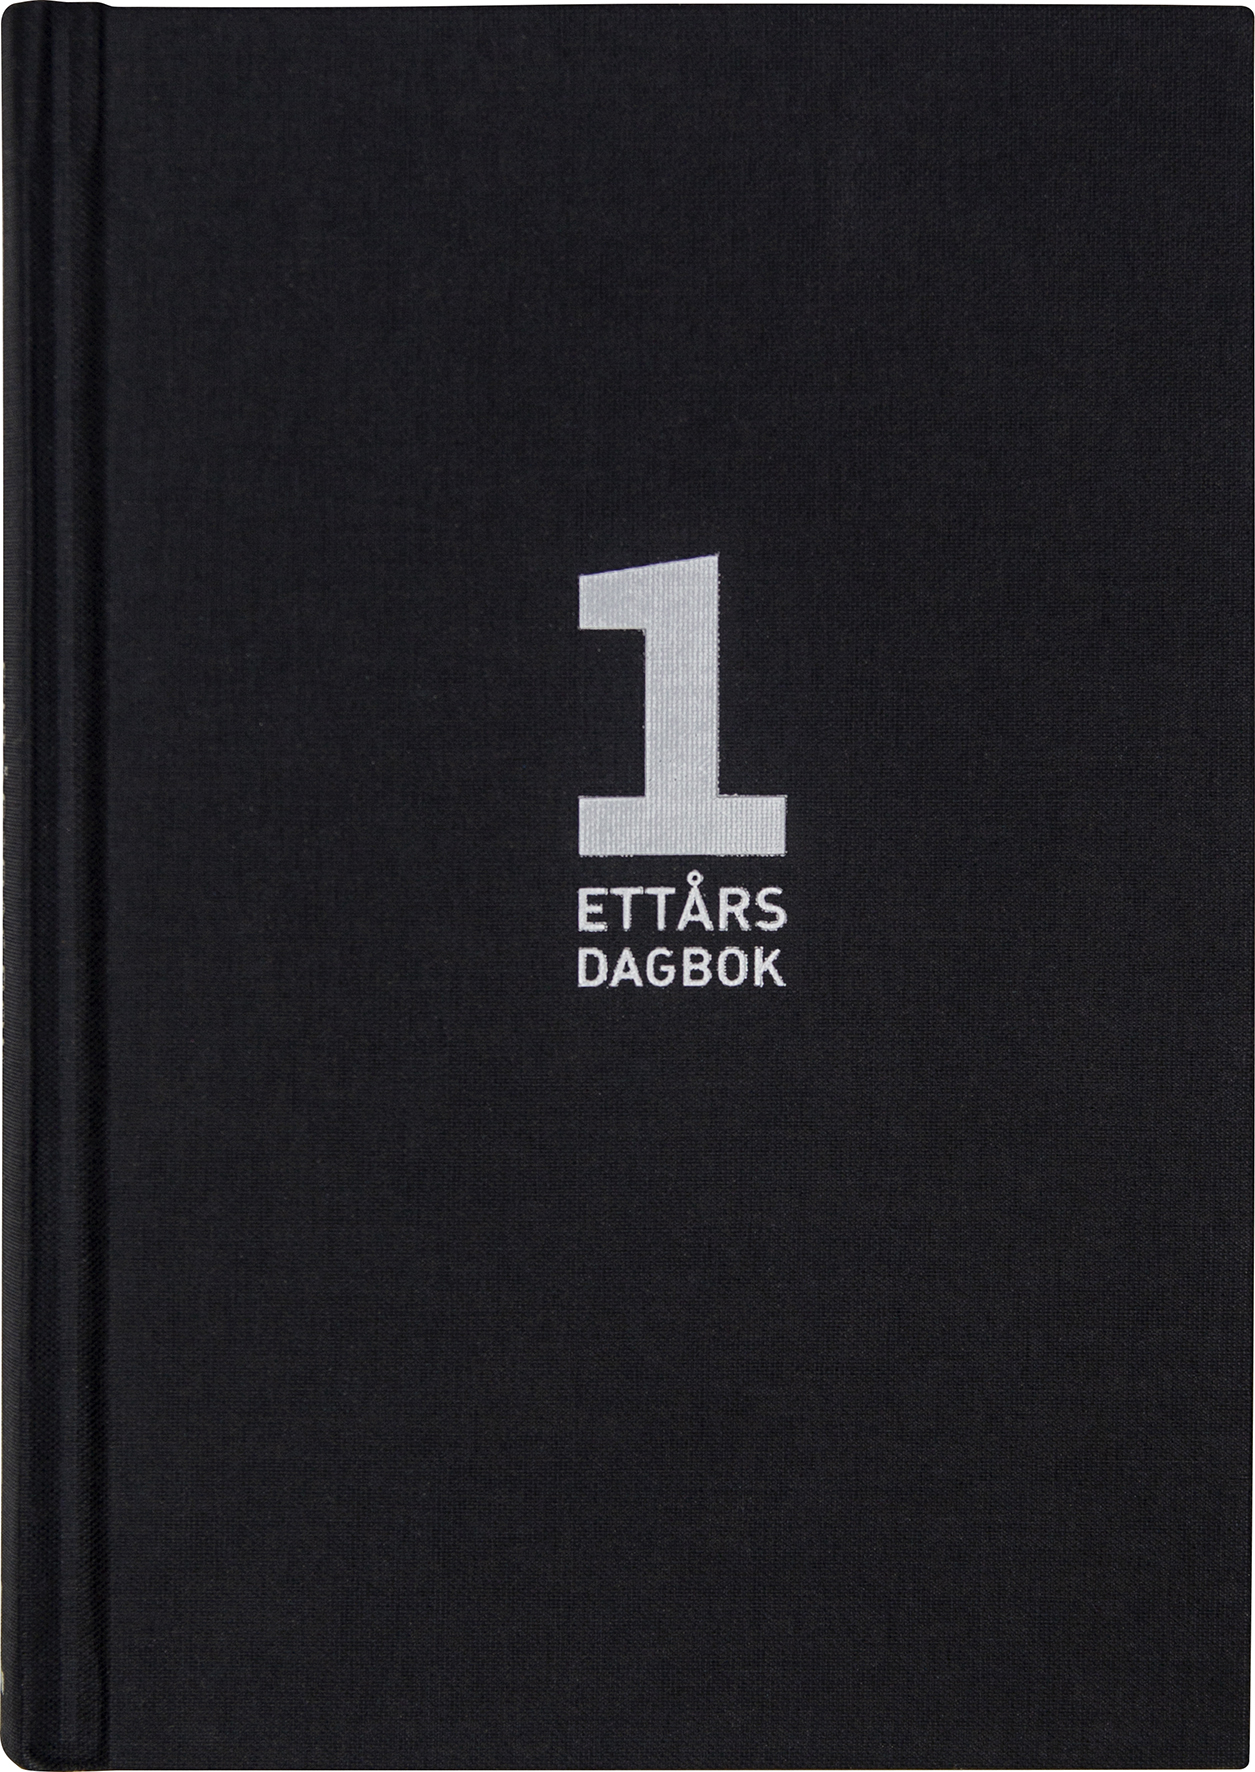 [6021092] 1-årsdagbok svart linnetextil